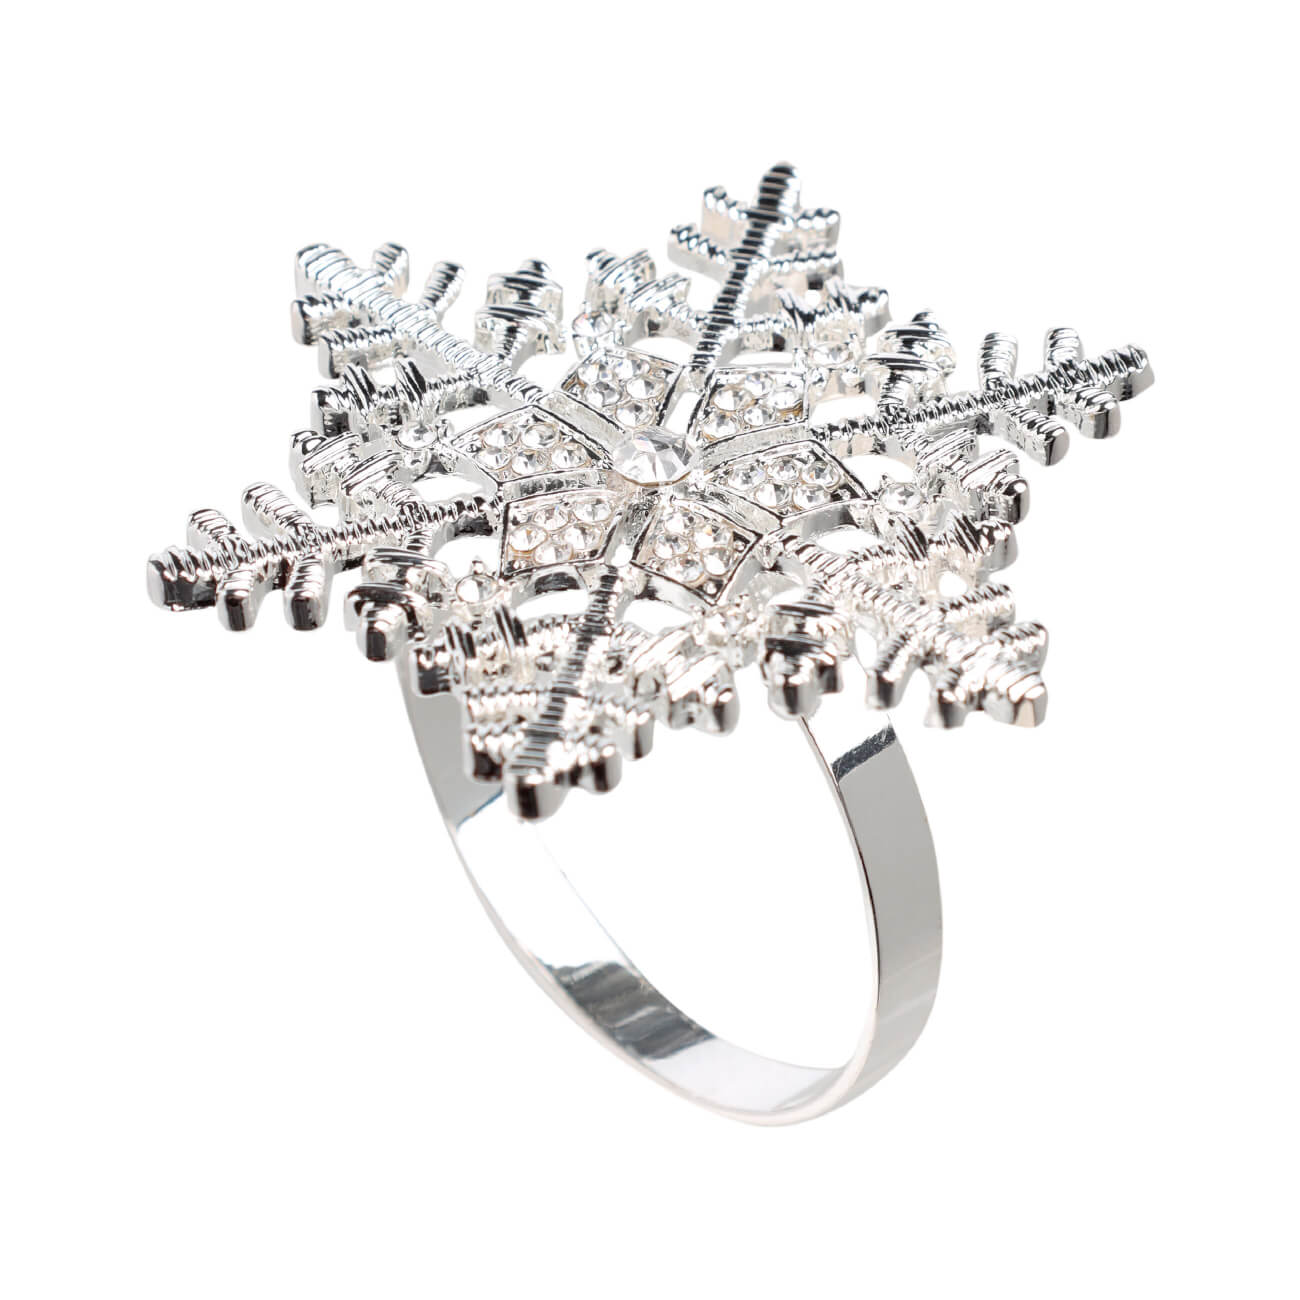 Кольцо для салфеток, 5 см, металл, серебристое, Снежинка, Snowfall кольцо для платка